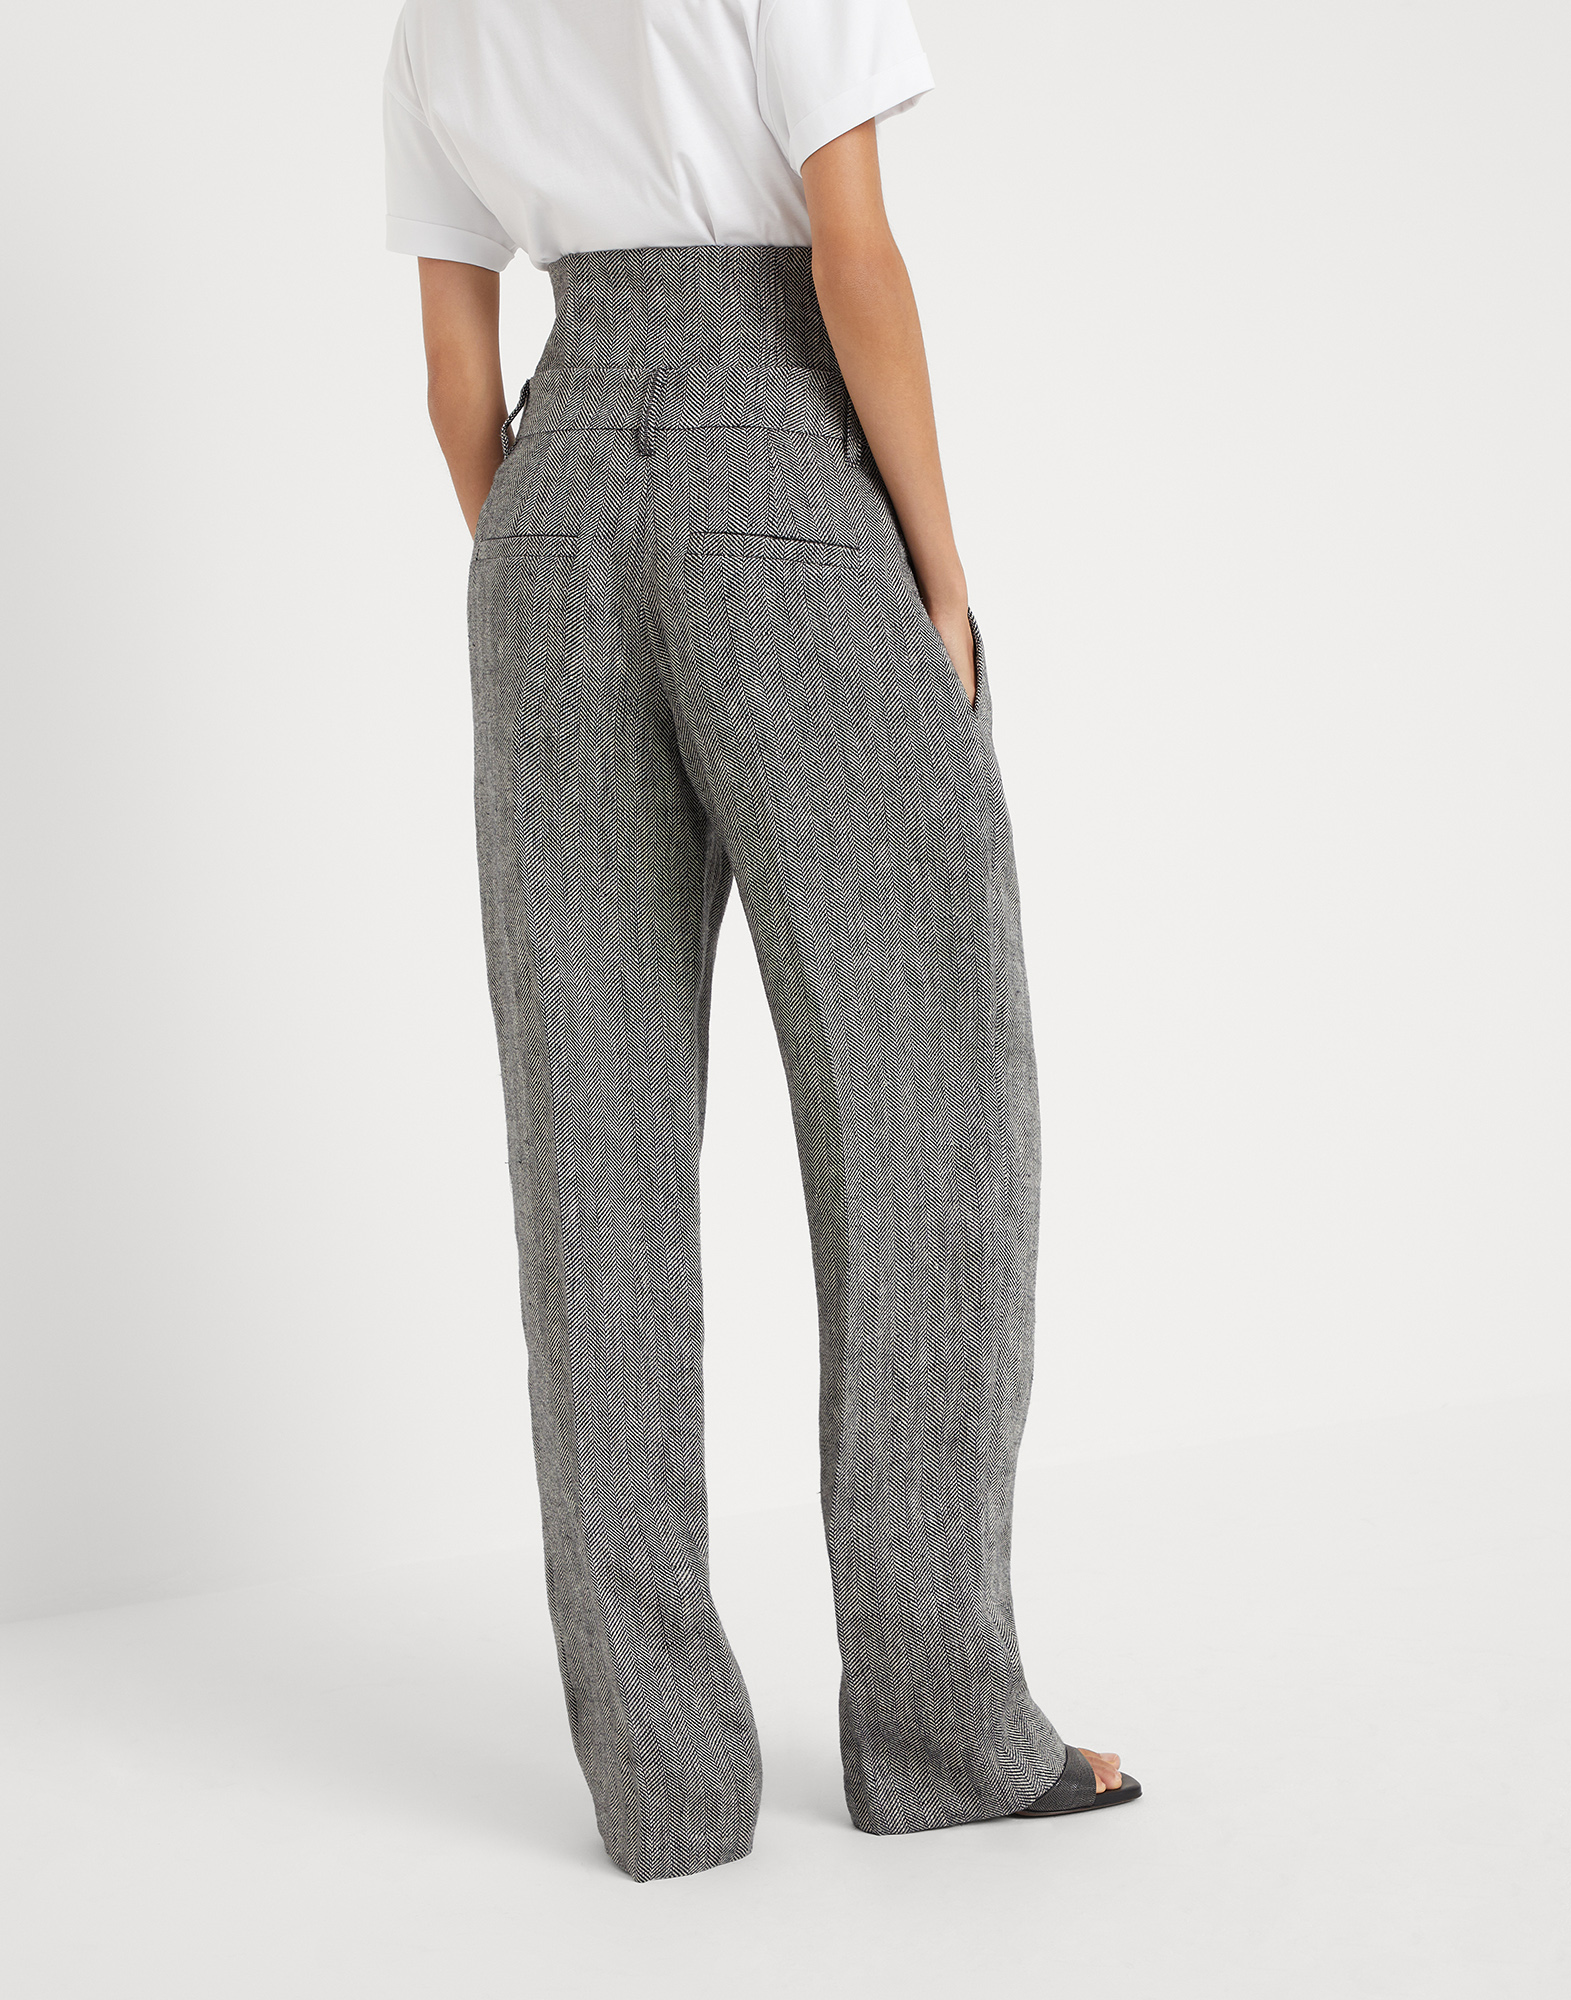 Irish linen trousers (241MH568P8529) for Woman | Brunello Cucinelli